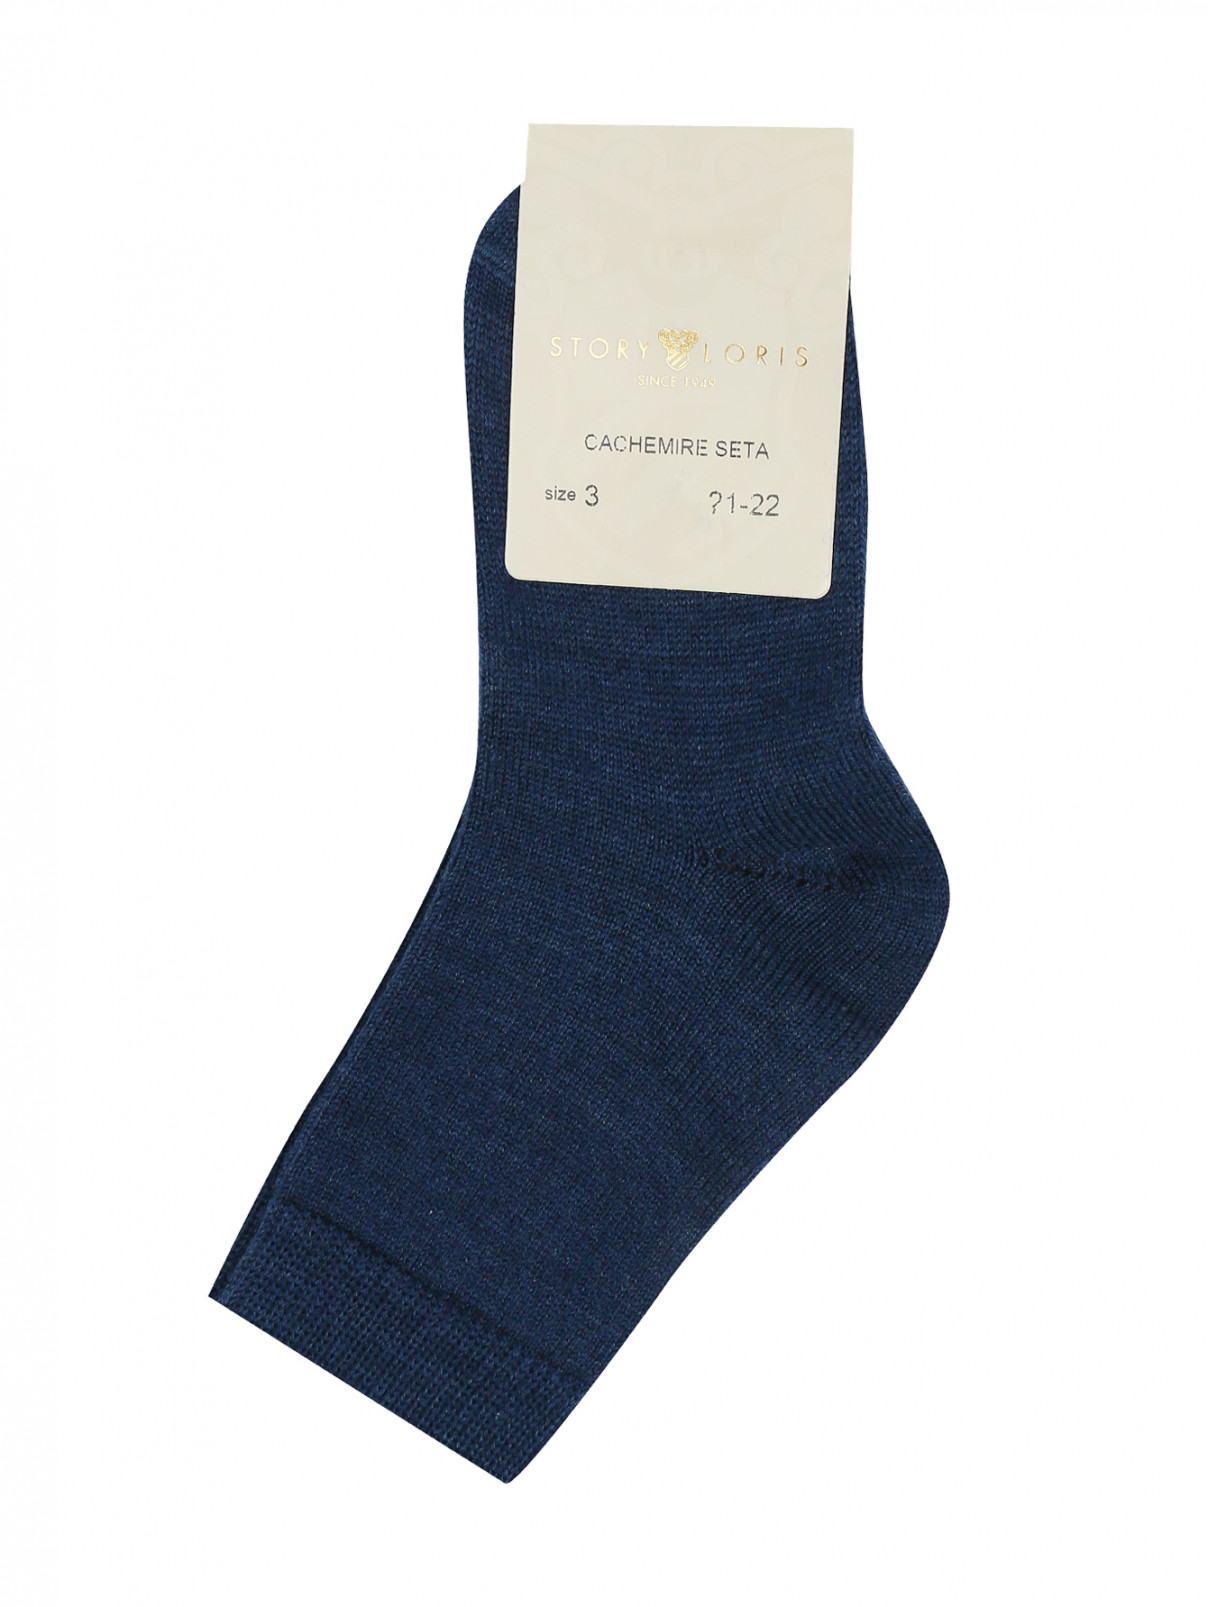 Носки с добавлением кашемира Story Loris  –  Общий вид  – Цвет:  Синий